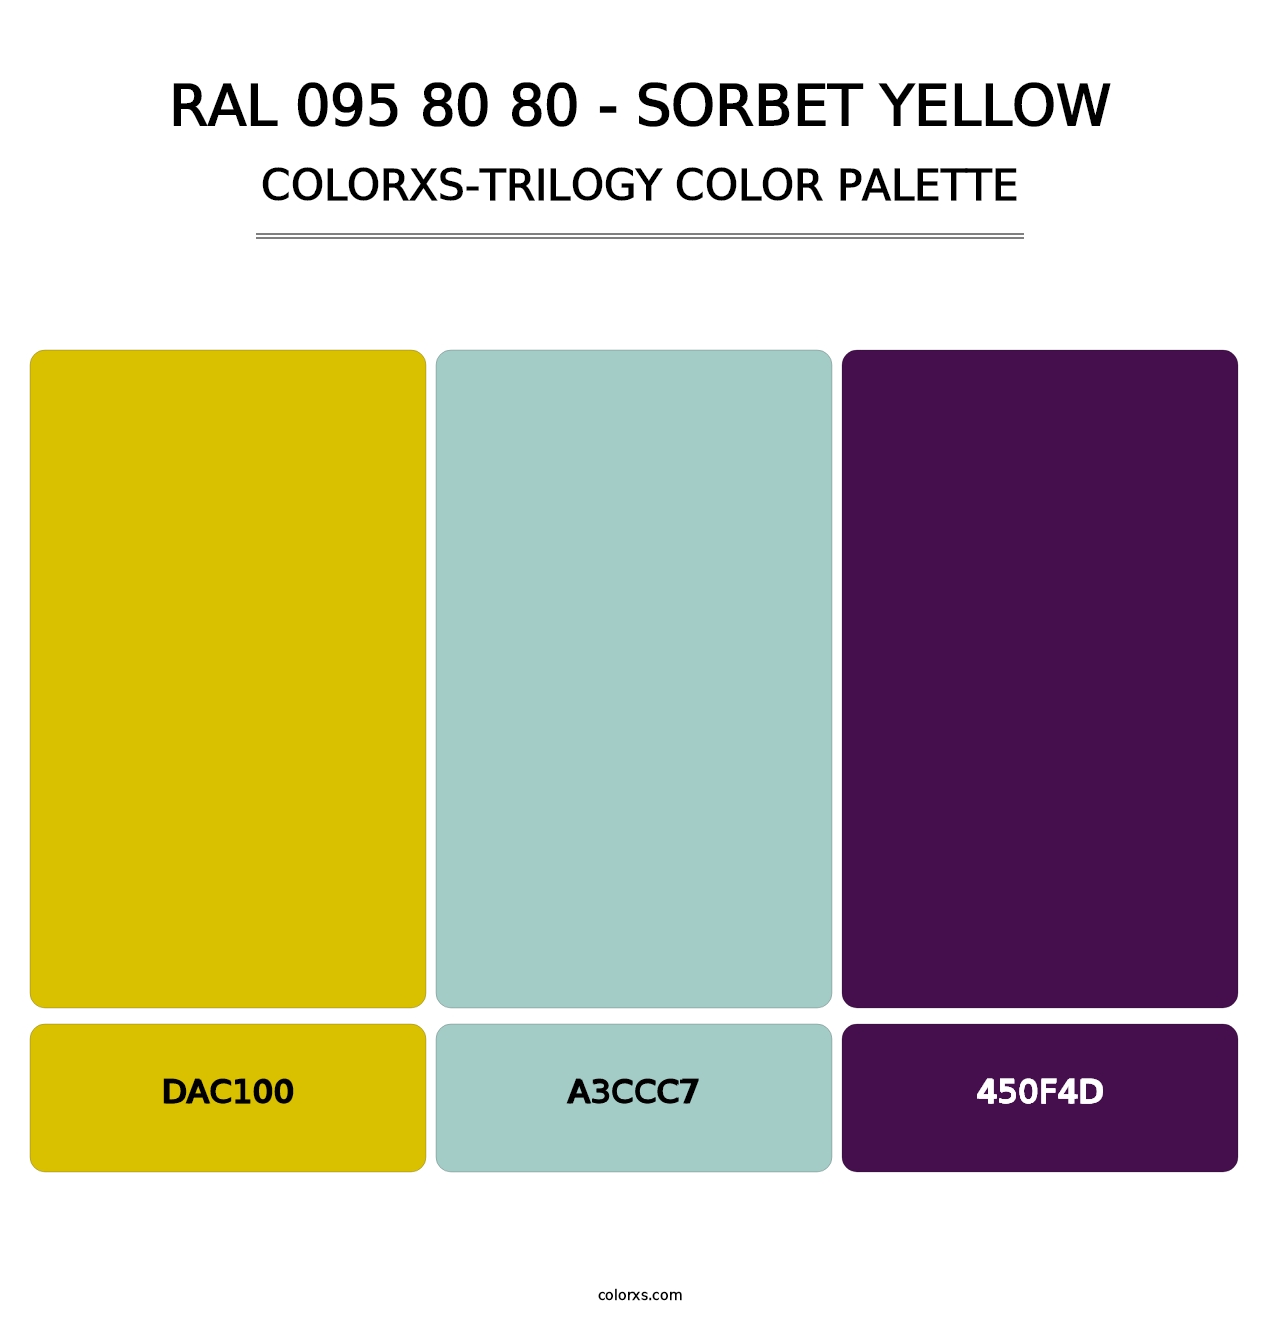 RAL 095 80 80 - Sorbet Yellow - Colorxs Trilogy Palette